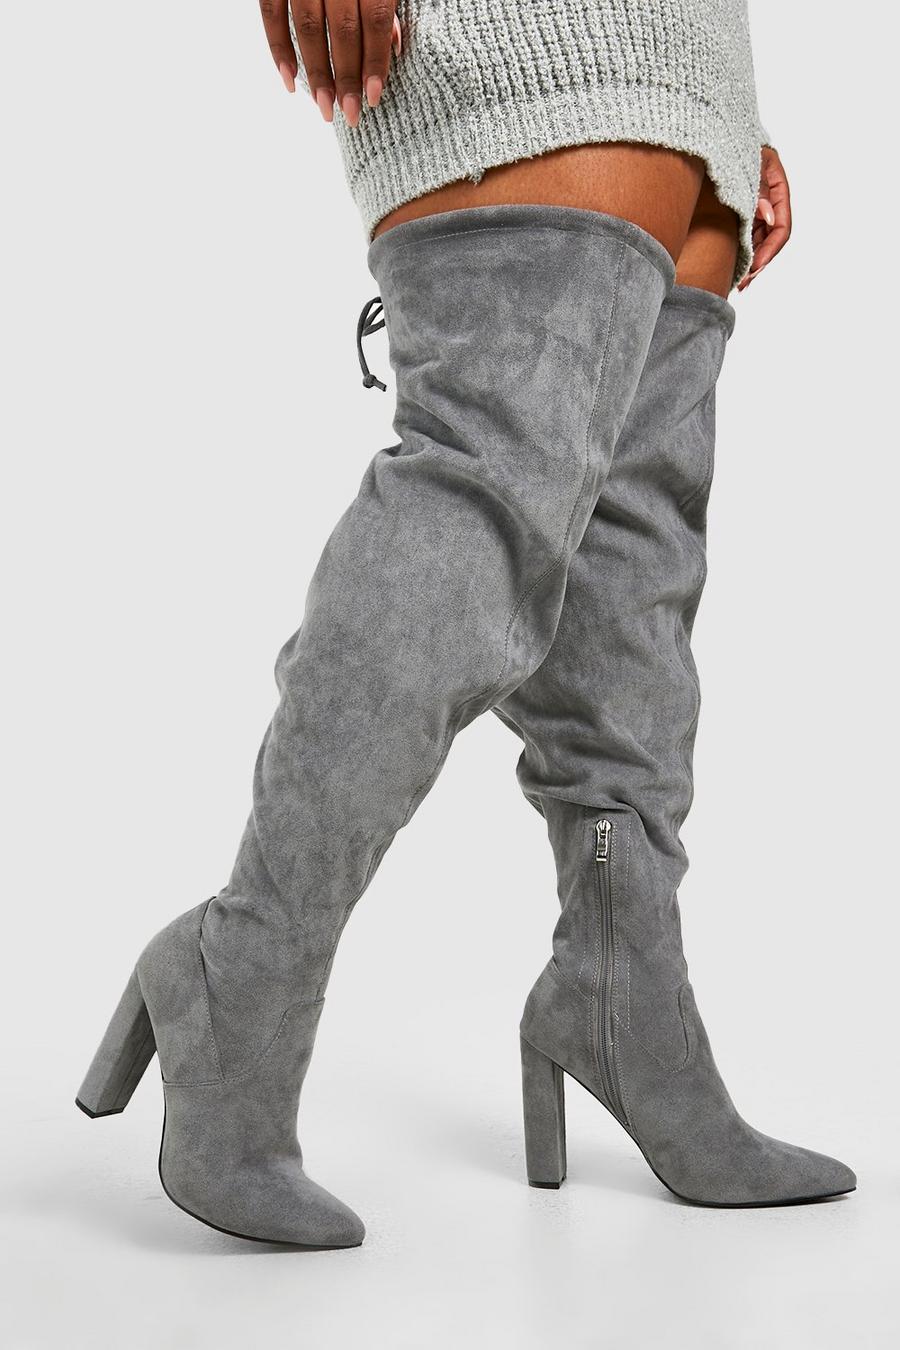 Weite Overknee-Stiefel mit Schnür-Detail und Absatz, Grey grau